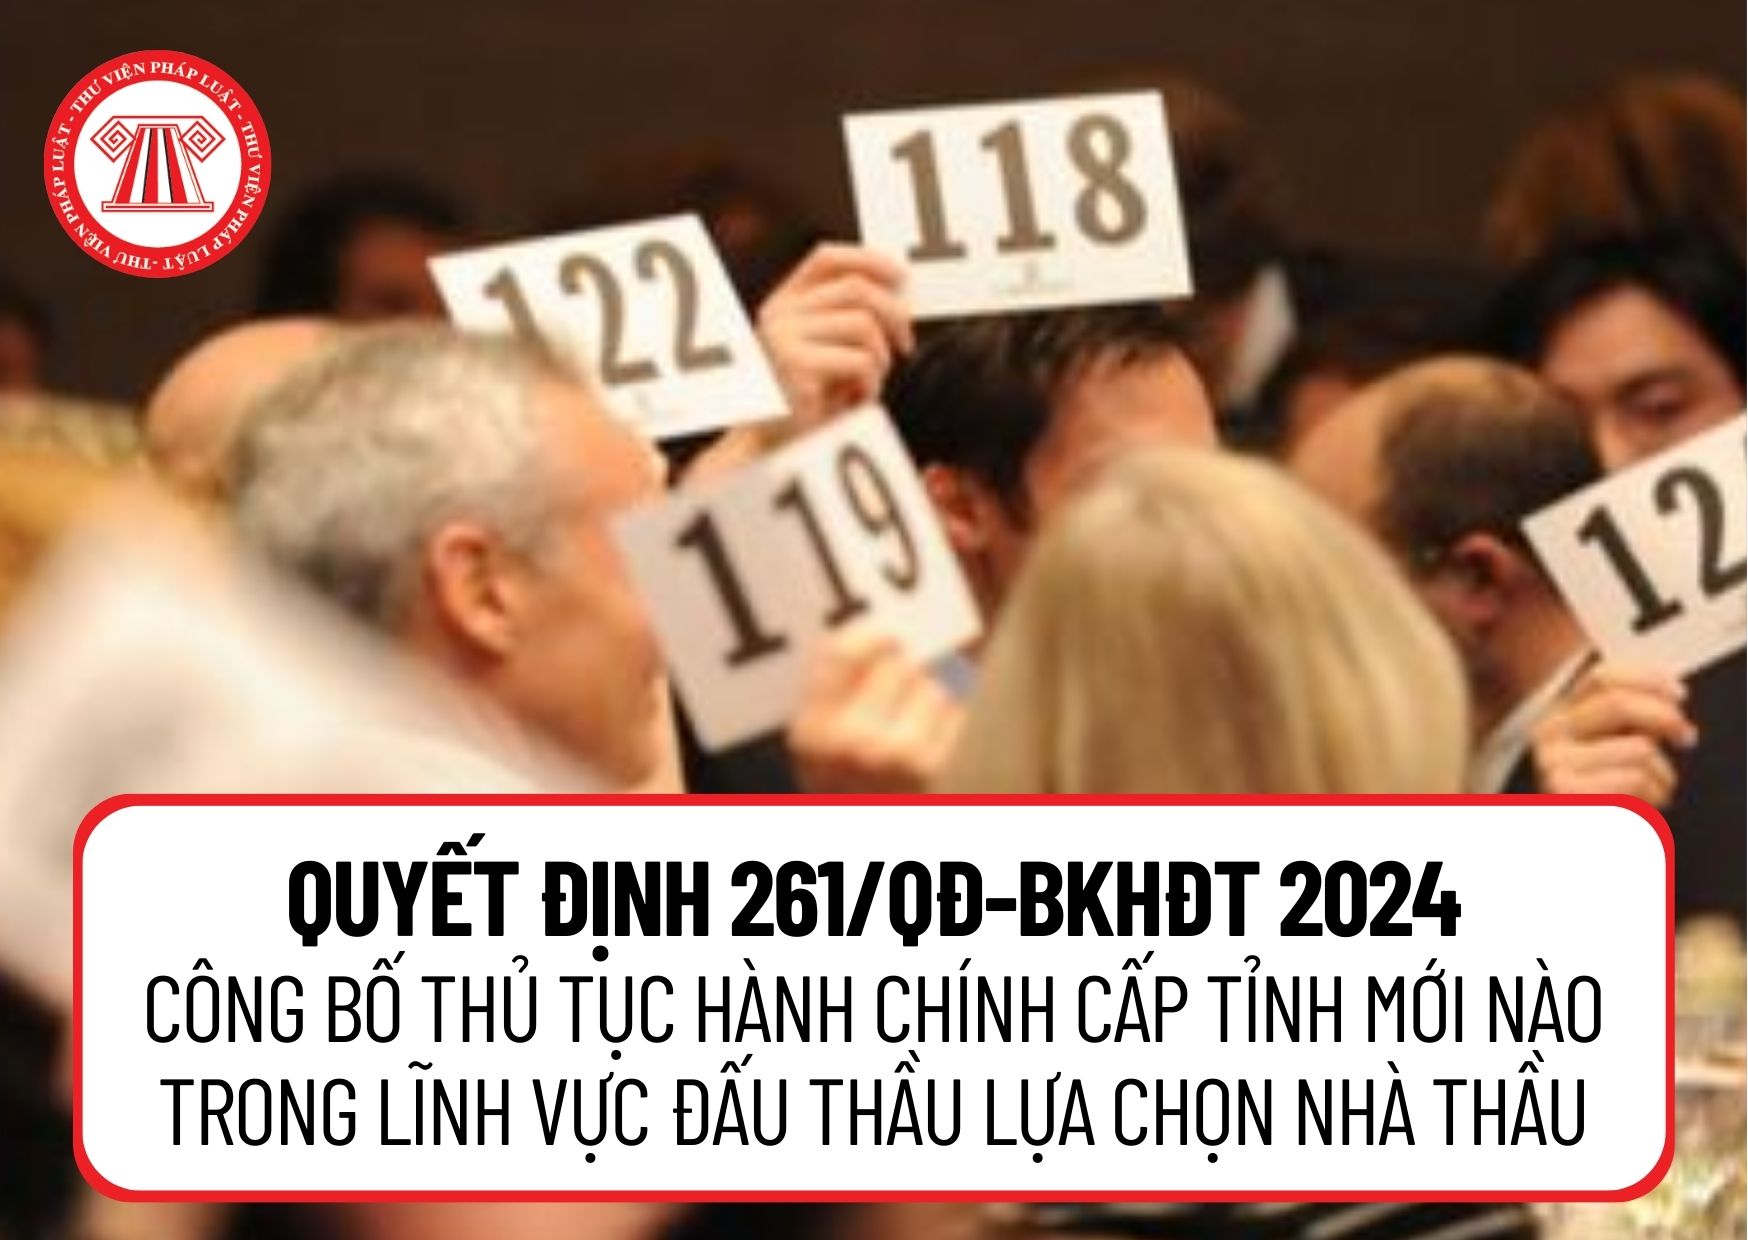 Quyết định 261/QĐ-BKHĐT 2024 công bố thủ tục hành chính cấp tỉnh mới nào trong lĩnh vực đấu thầu lựa chọn nhà thầu?